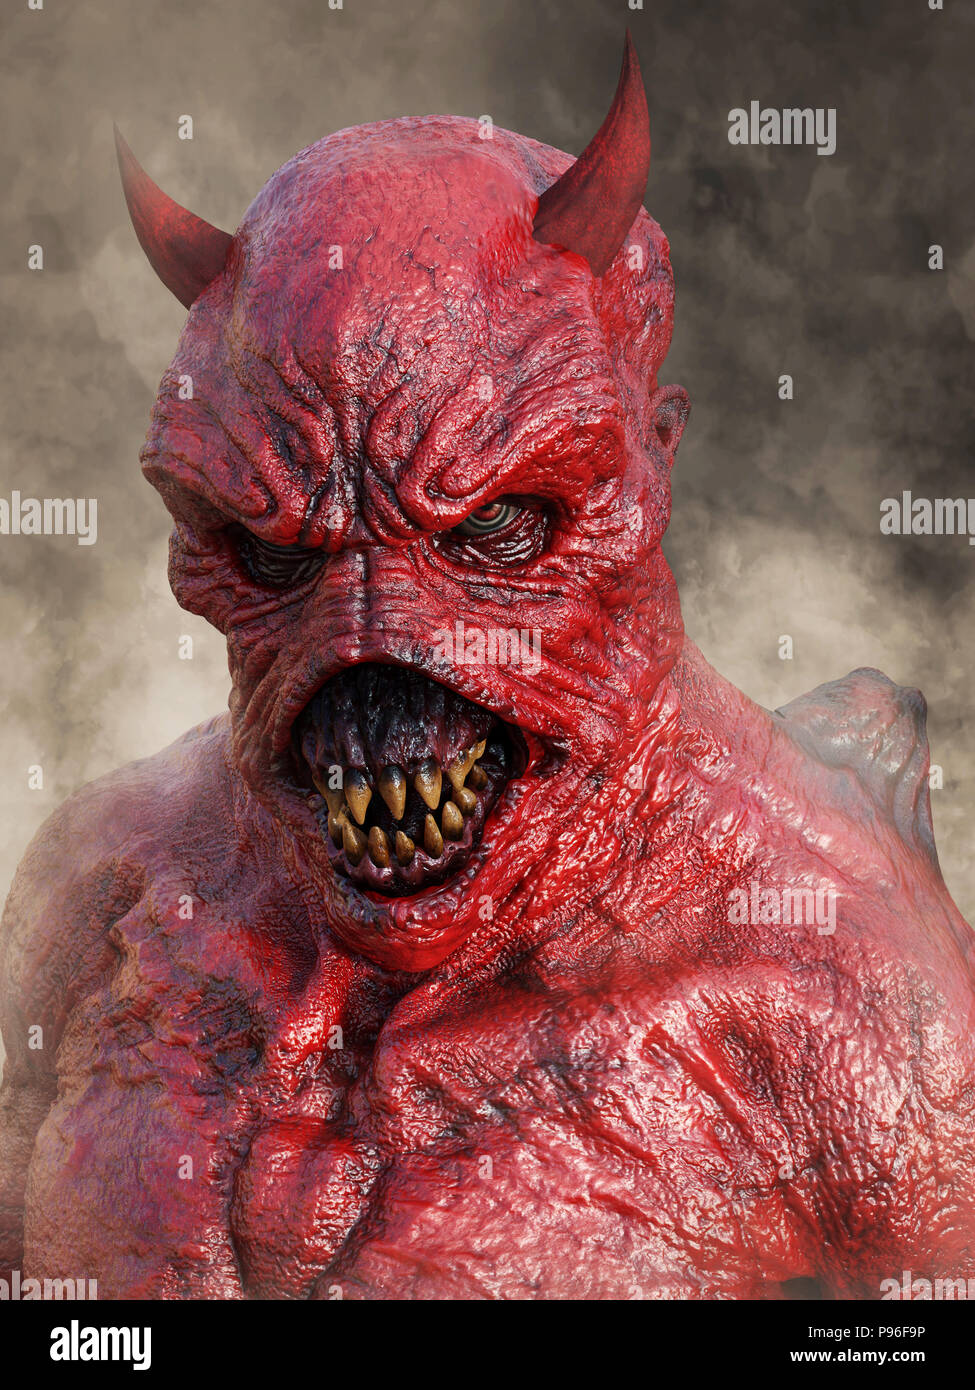 Kopf Porträt eines bedeuten, die dämonische, roter Teufel mit Hörnern, 3D-Rendering. Er ist durch Rauch umgeben. Stockfoto